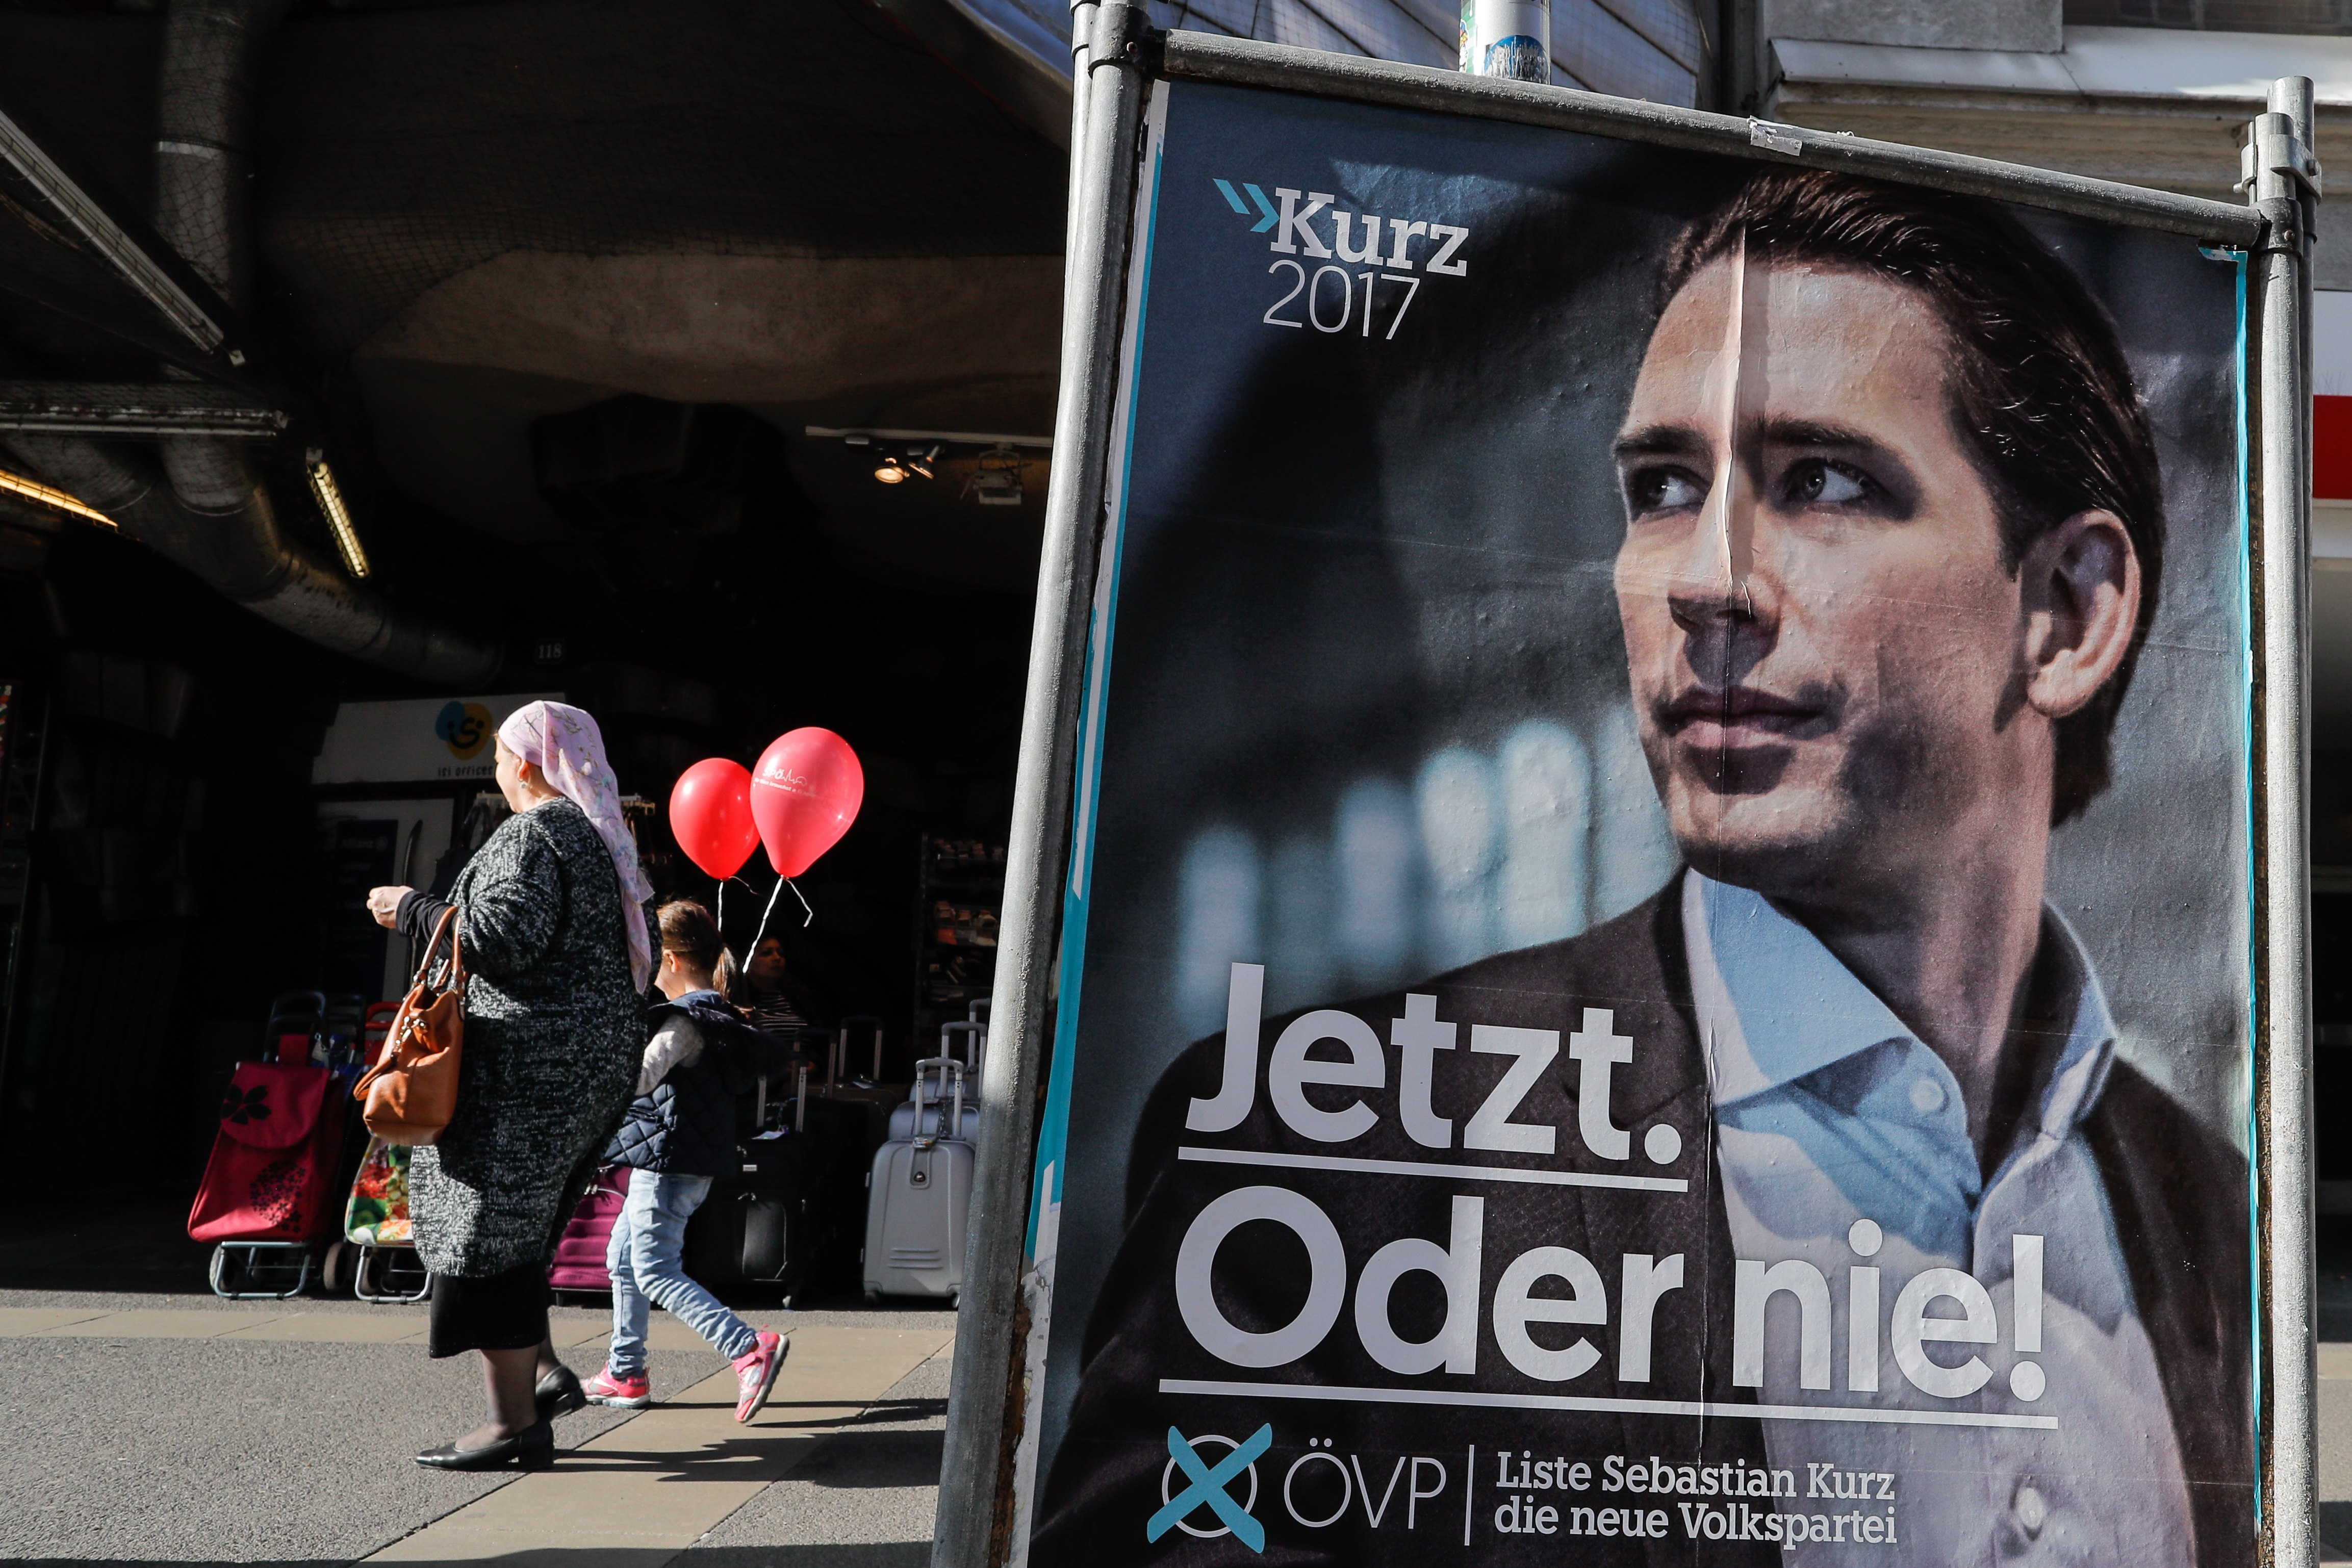 Αυστρία: Η χώρα οδεύει προς τη νίκη ενός νεαρού και μια δεξιά στροφή